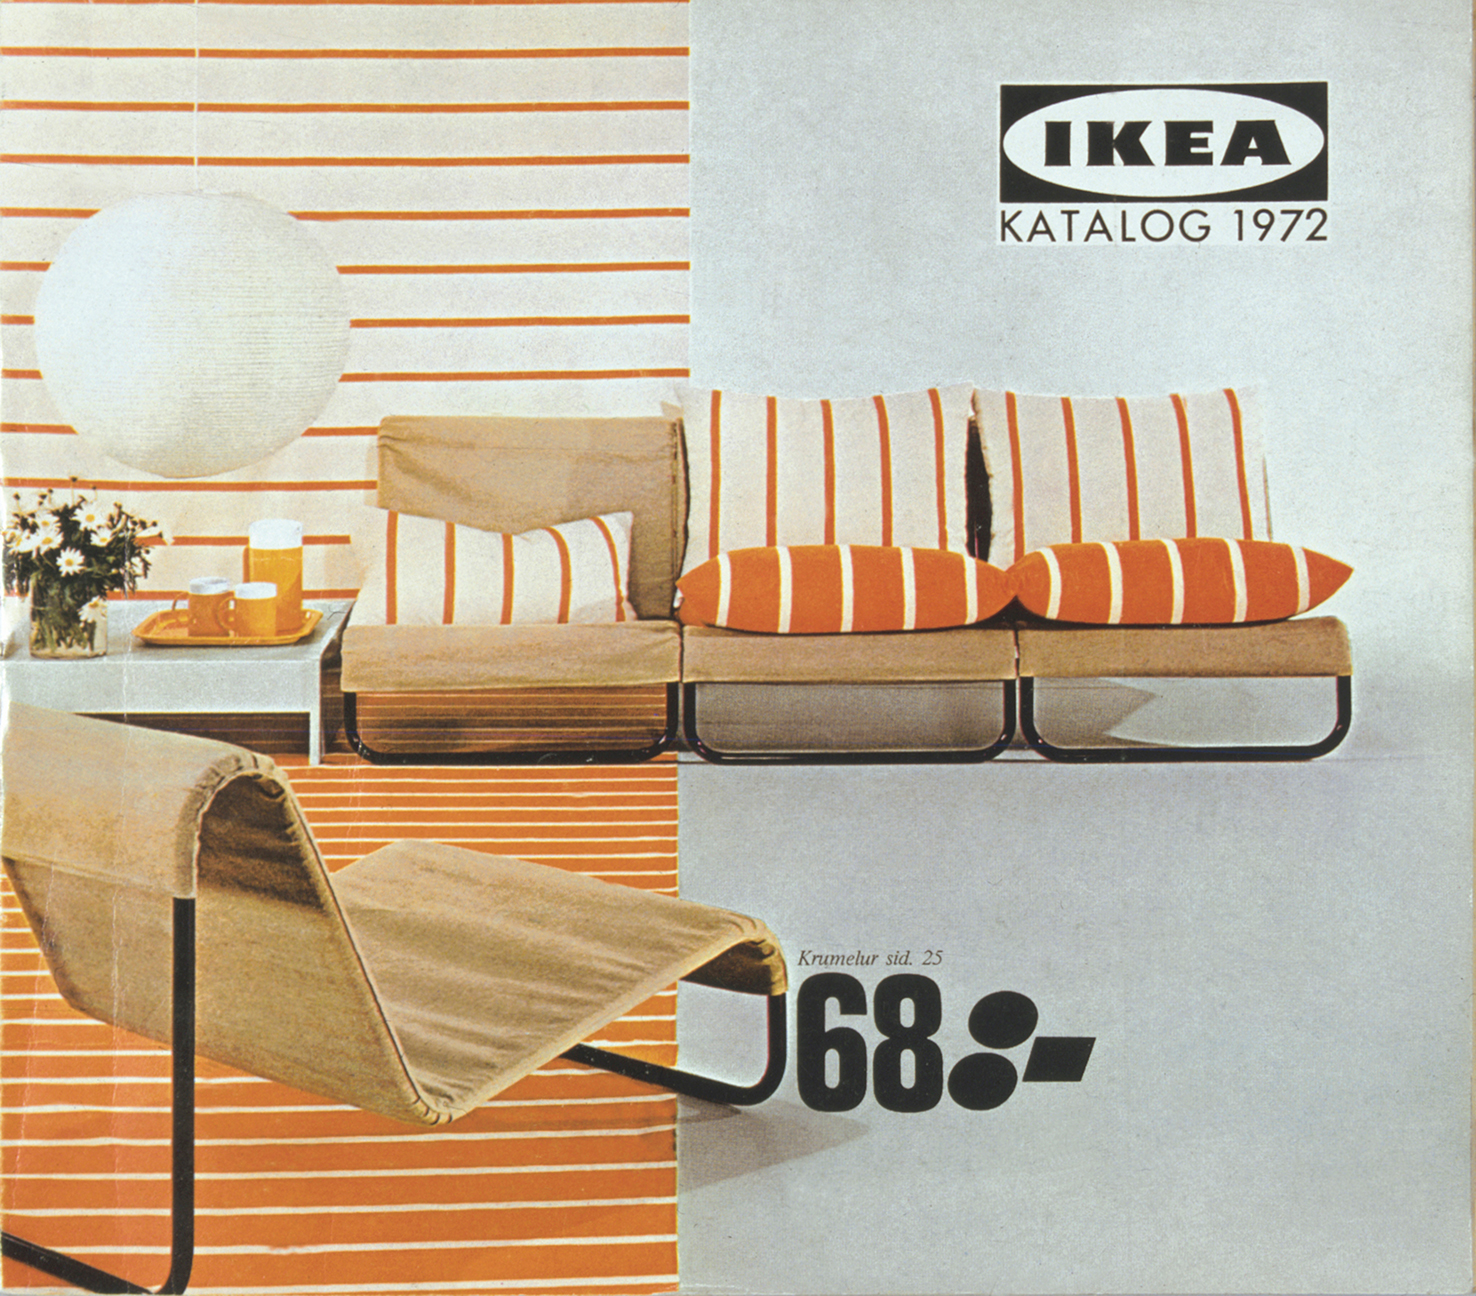 old ikea catalogue featuring orange stripes